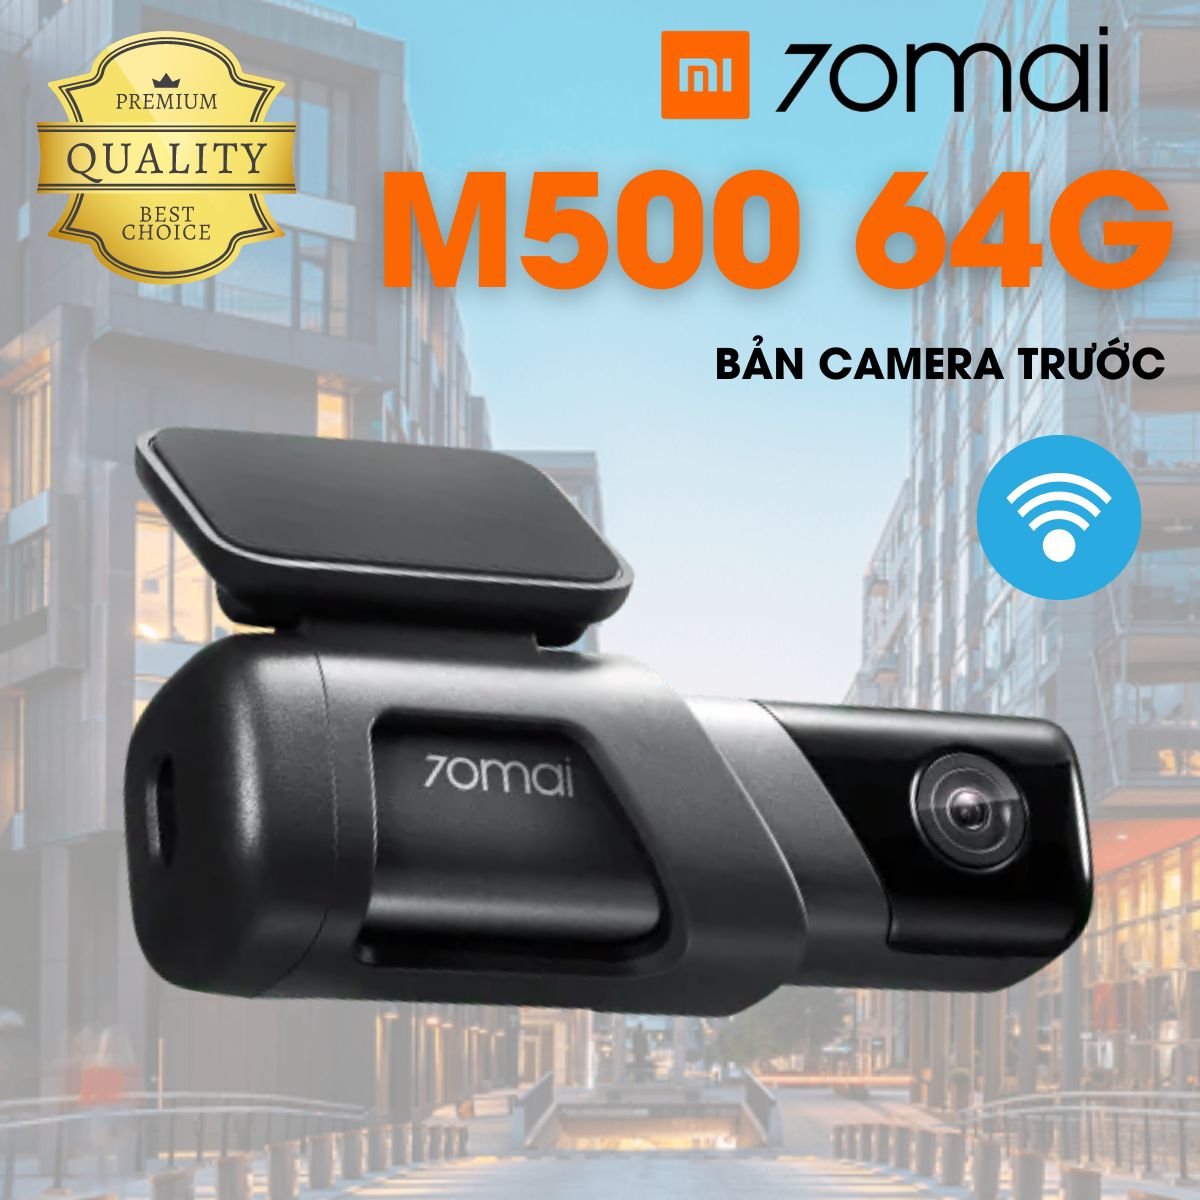 Camera hành trình Xiaomi 70Mai Dash cam M500 64G, 2K tích hợp GPS, cảm biến áp suất lốp (mua thêm)